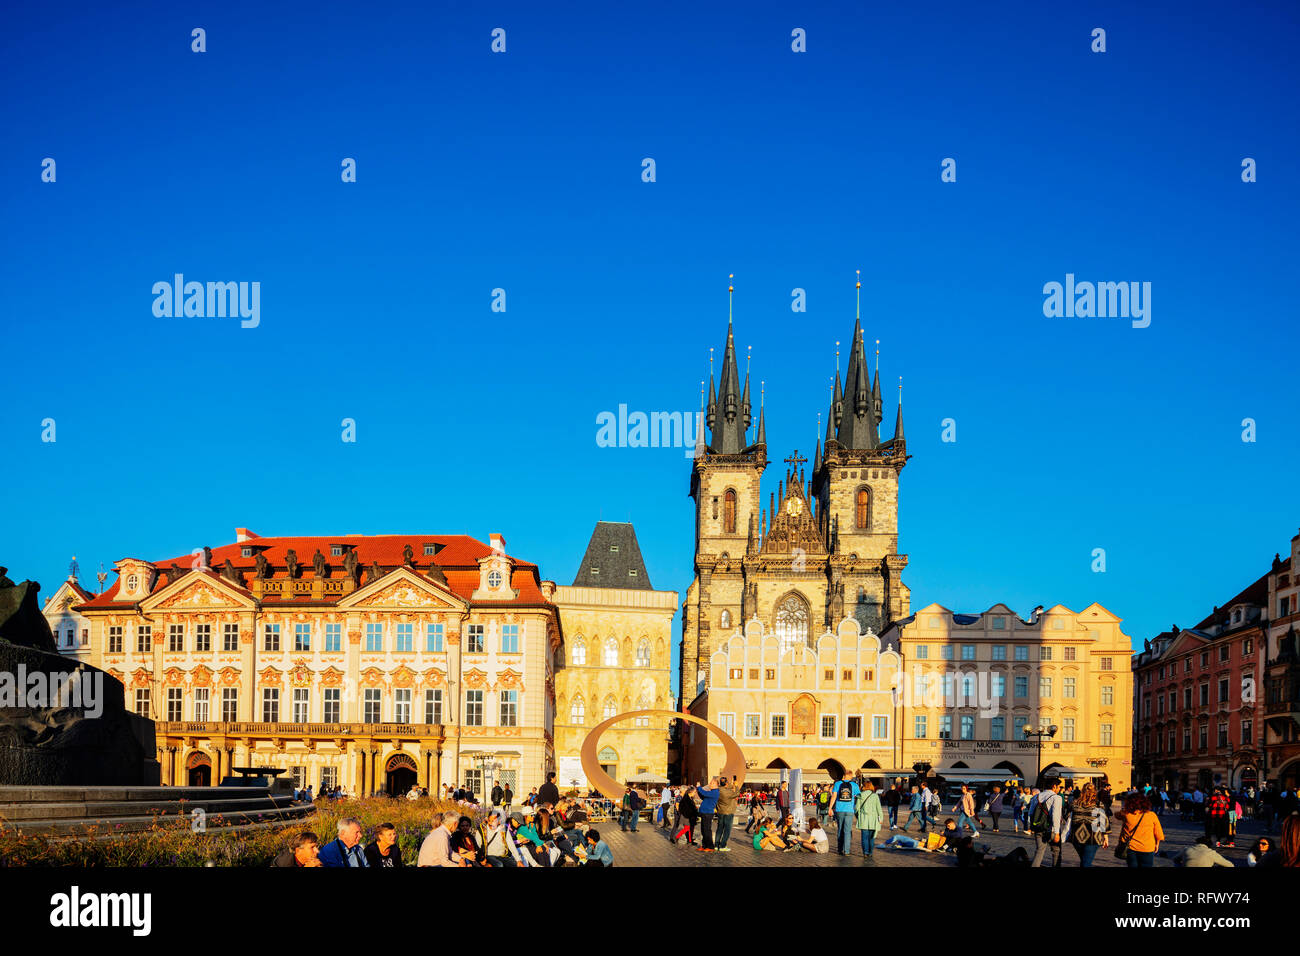 Plaza de la ciudad vieja, la iglesia de Nuestra Señora antes de Tyn, Sitio del Patrimonio Mundial de la UNESCO, Praga, República Checa, Europa Foto de stock